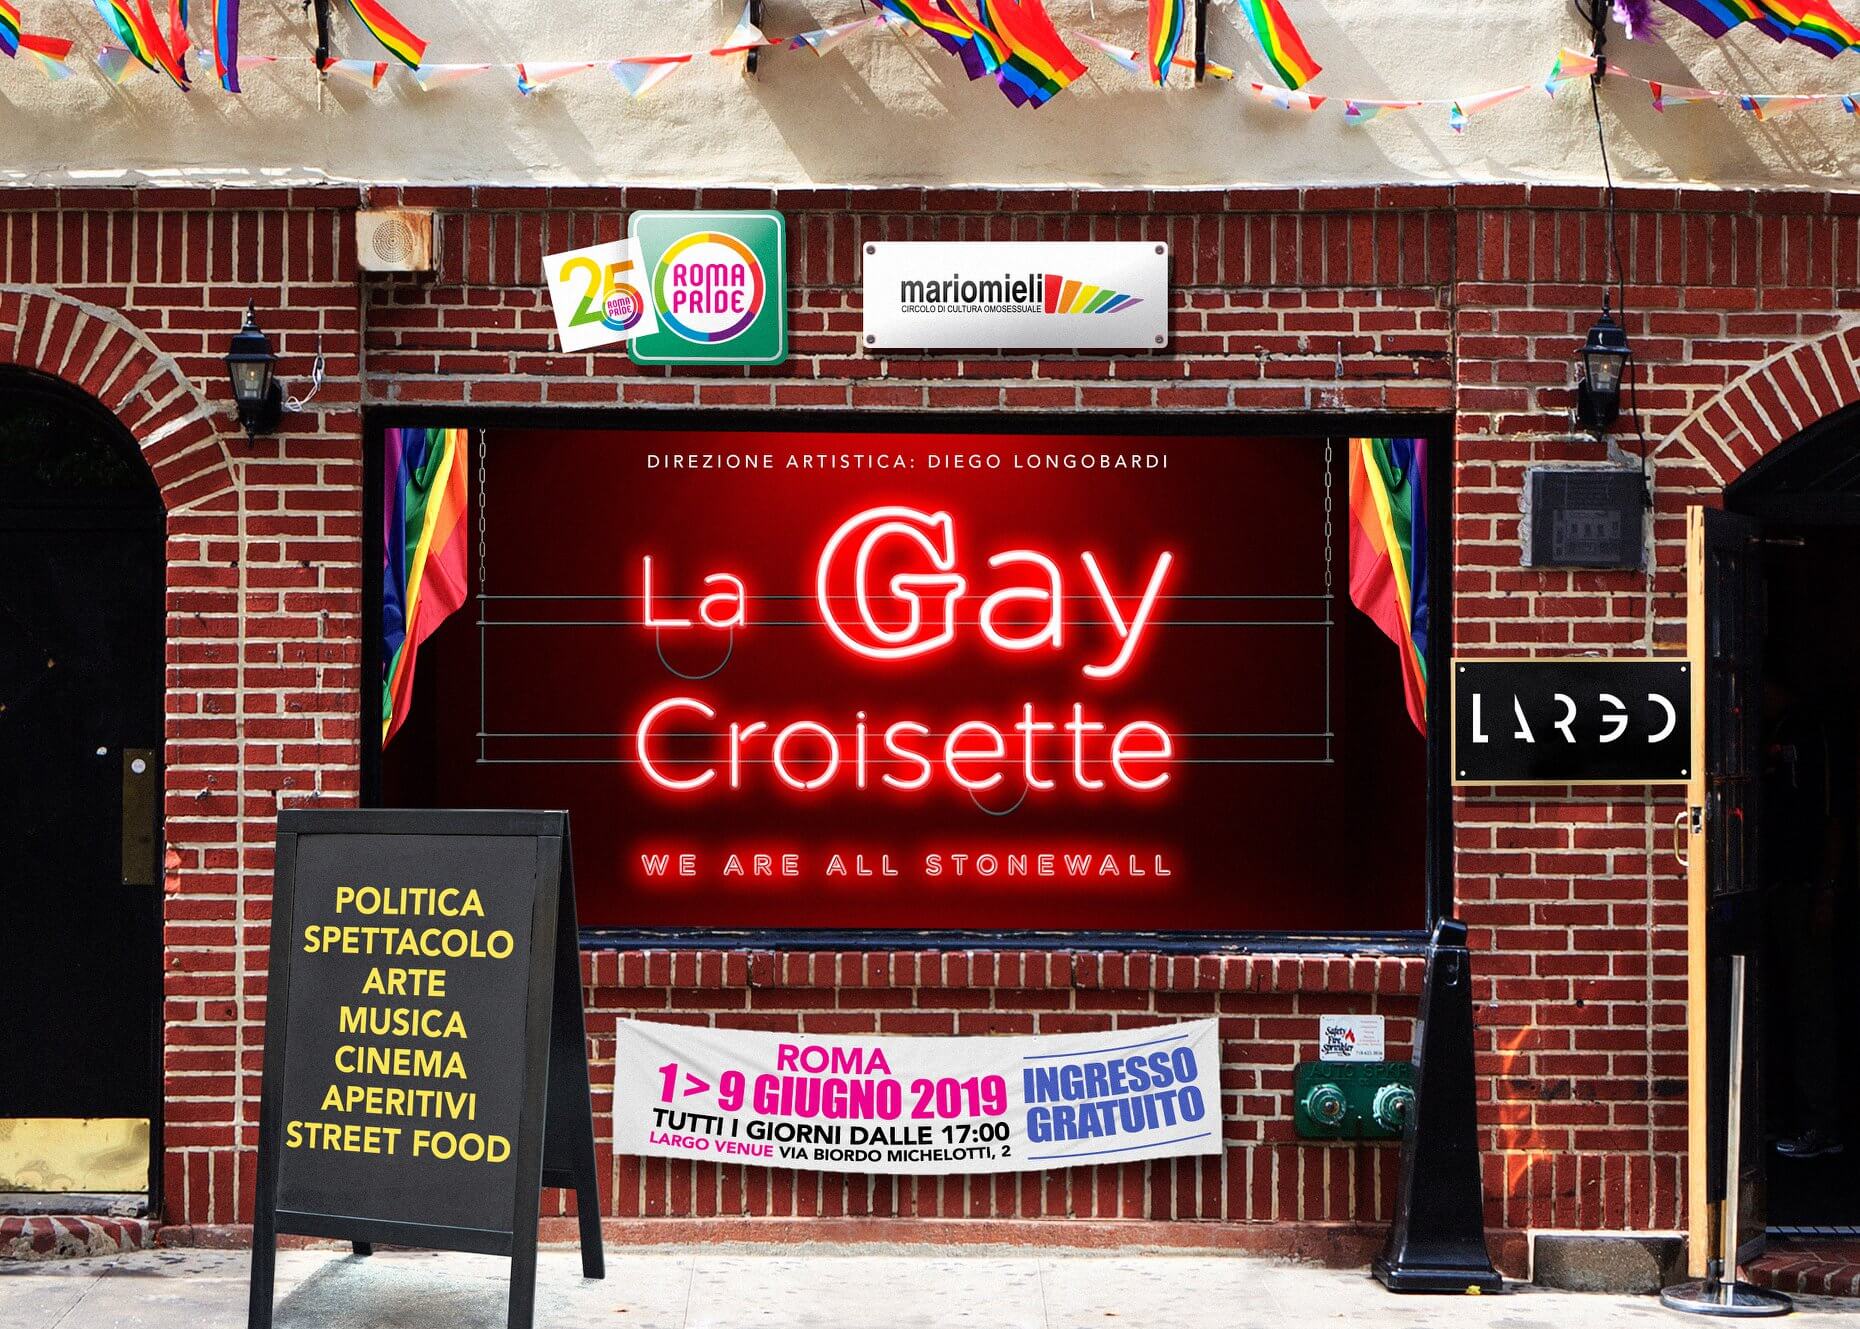 Roma Pride 2019, sigla, eventi, madrina e una conferma: Virginia Raggi non ci sarà - RomaPride GayCroissette - Gay.it